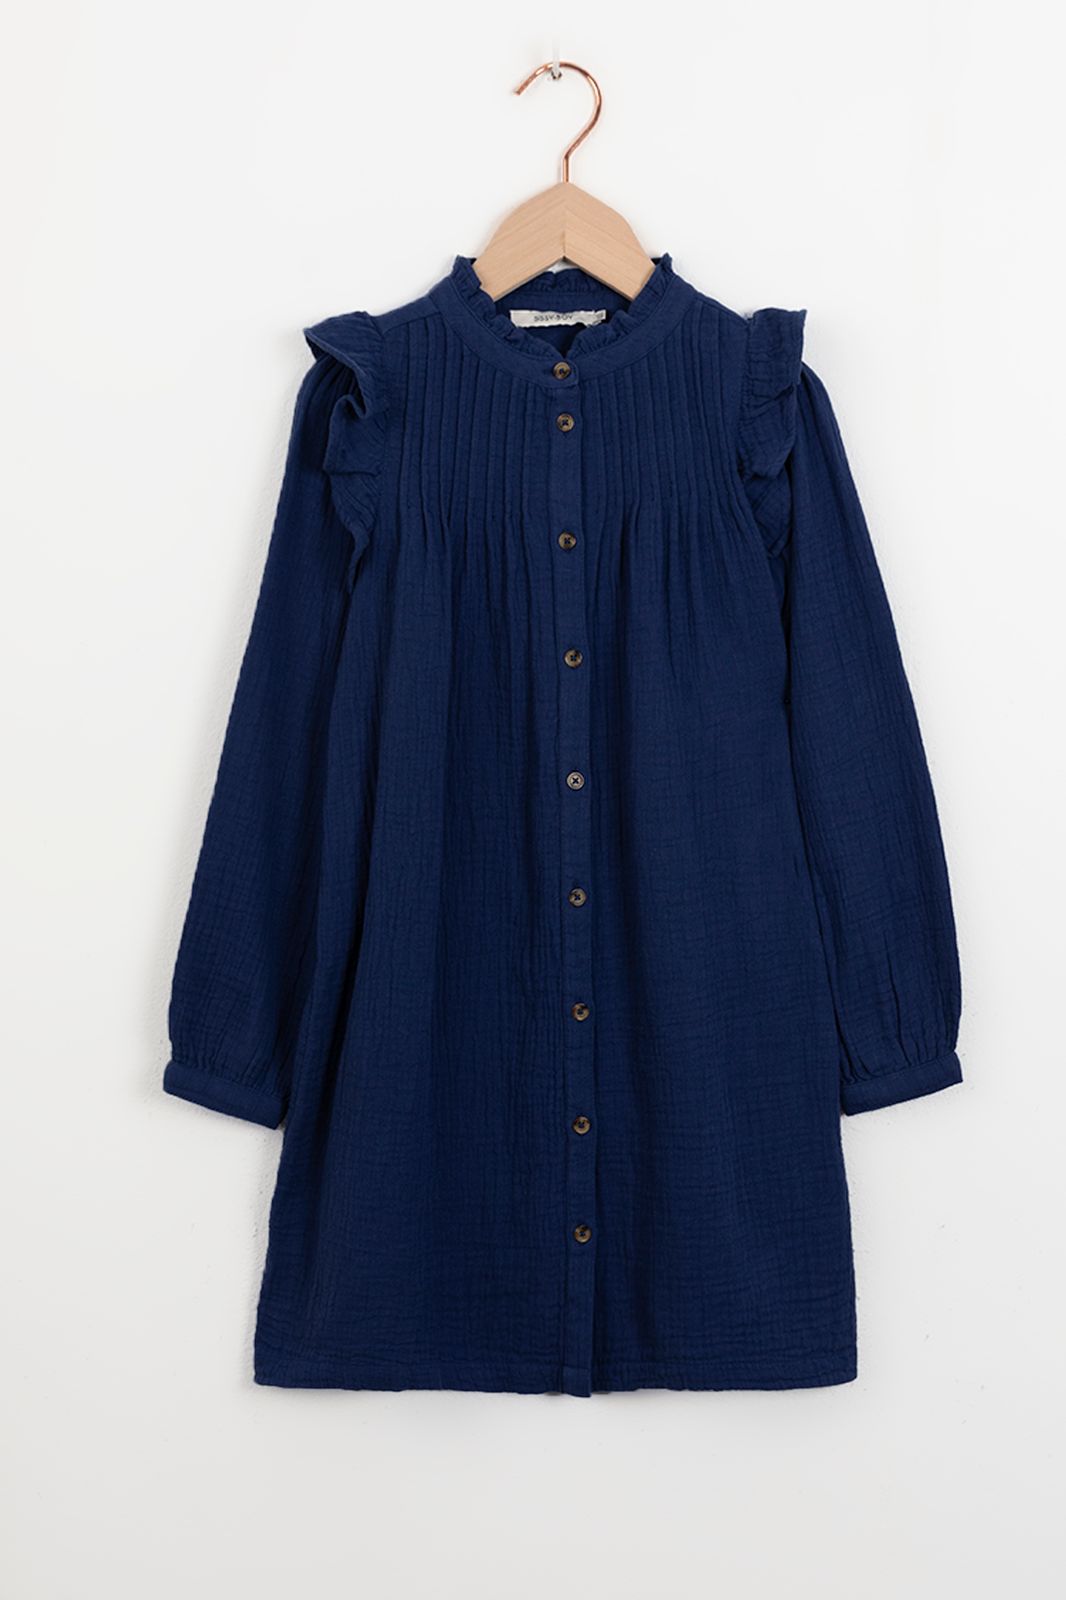 Kleid mit Rüschen-Details und Biesen - dunkelblau